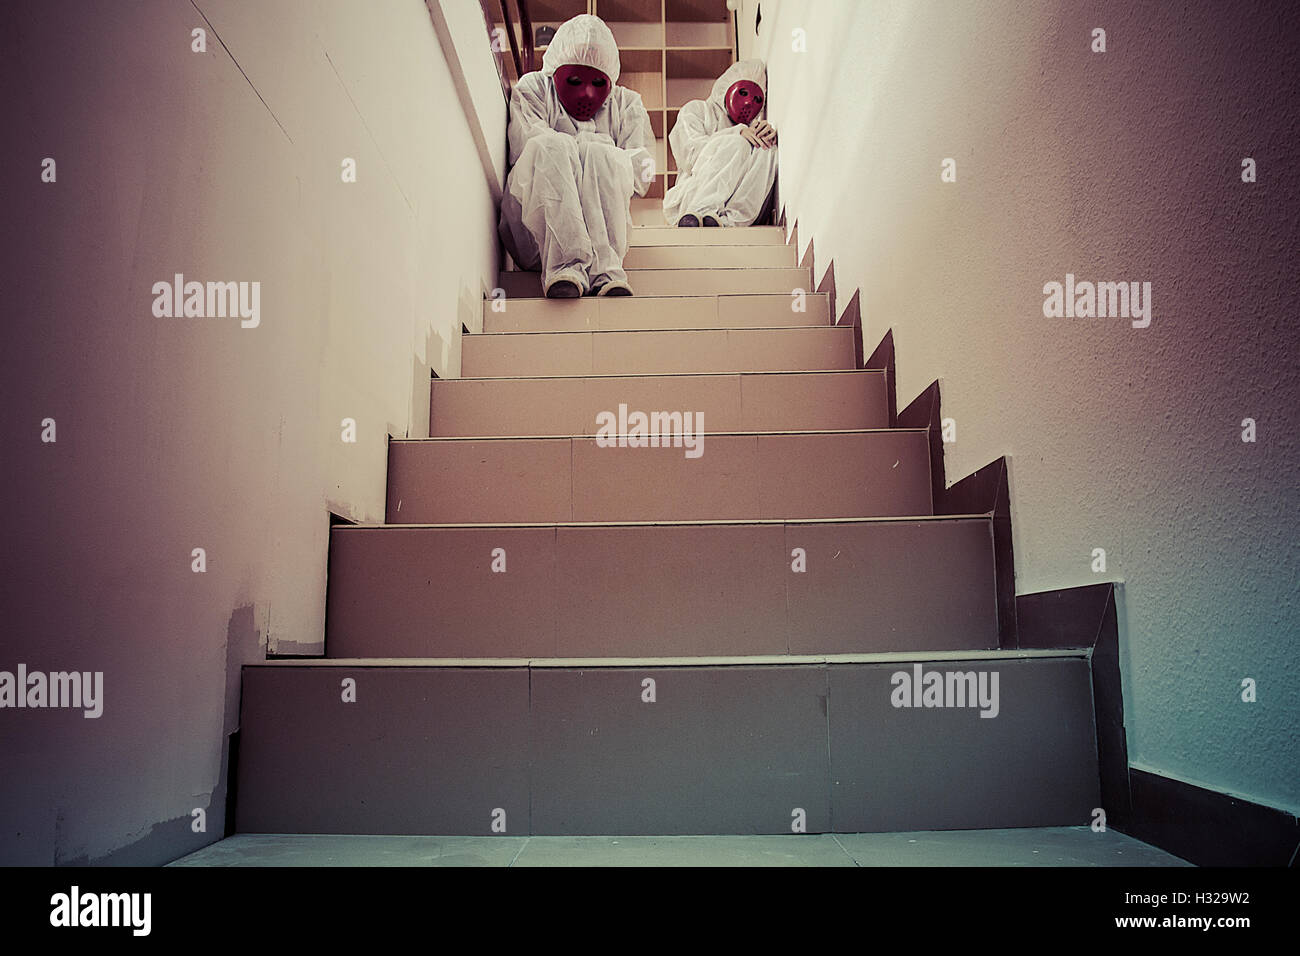 Treppen, Alptraum Konzept, Mann mit weißen Kleid und rote Maske Stockfoto